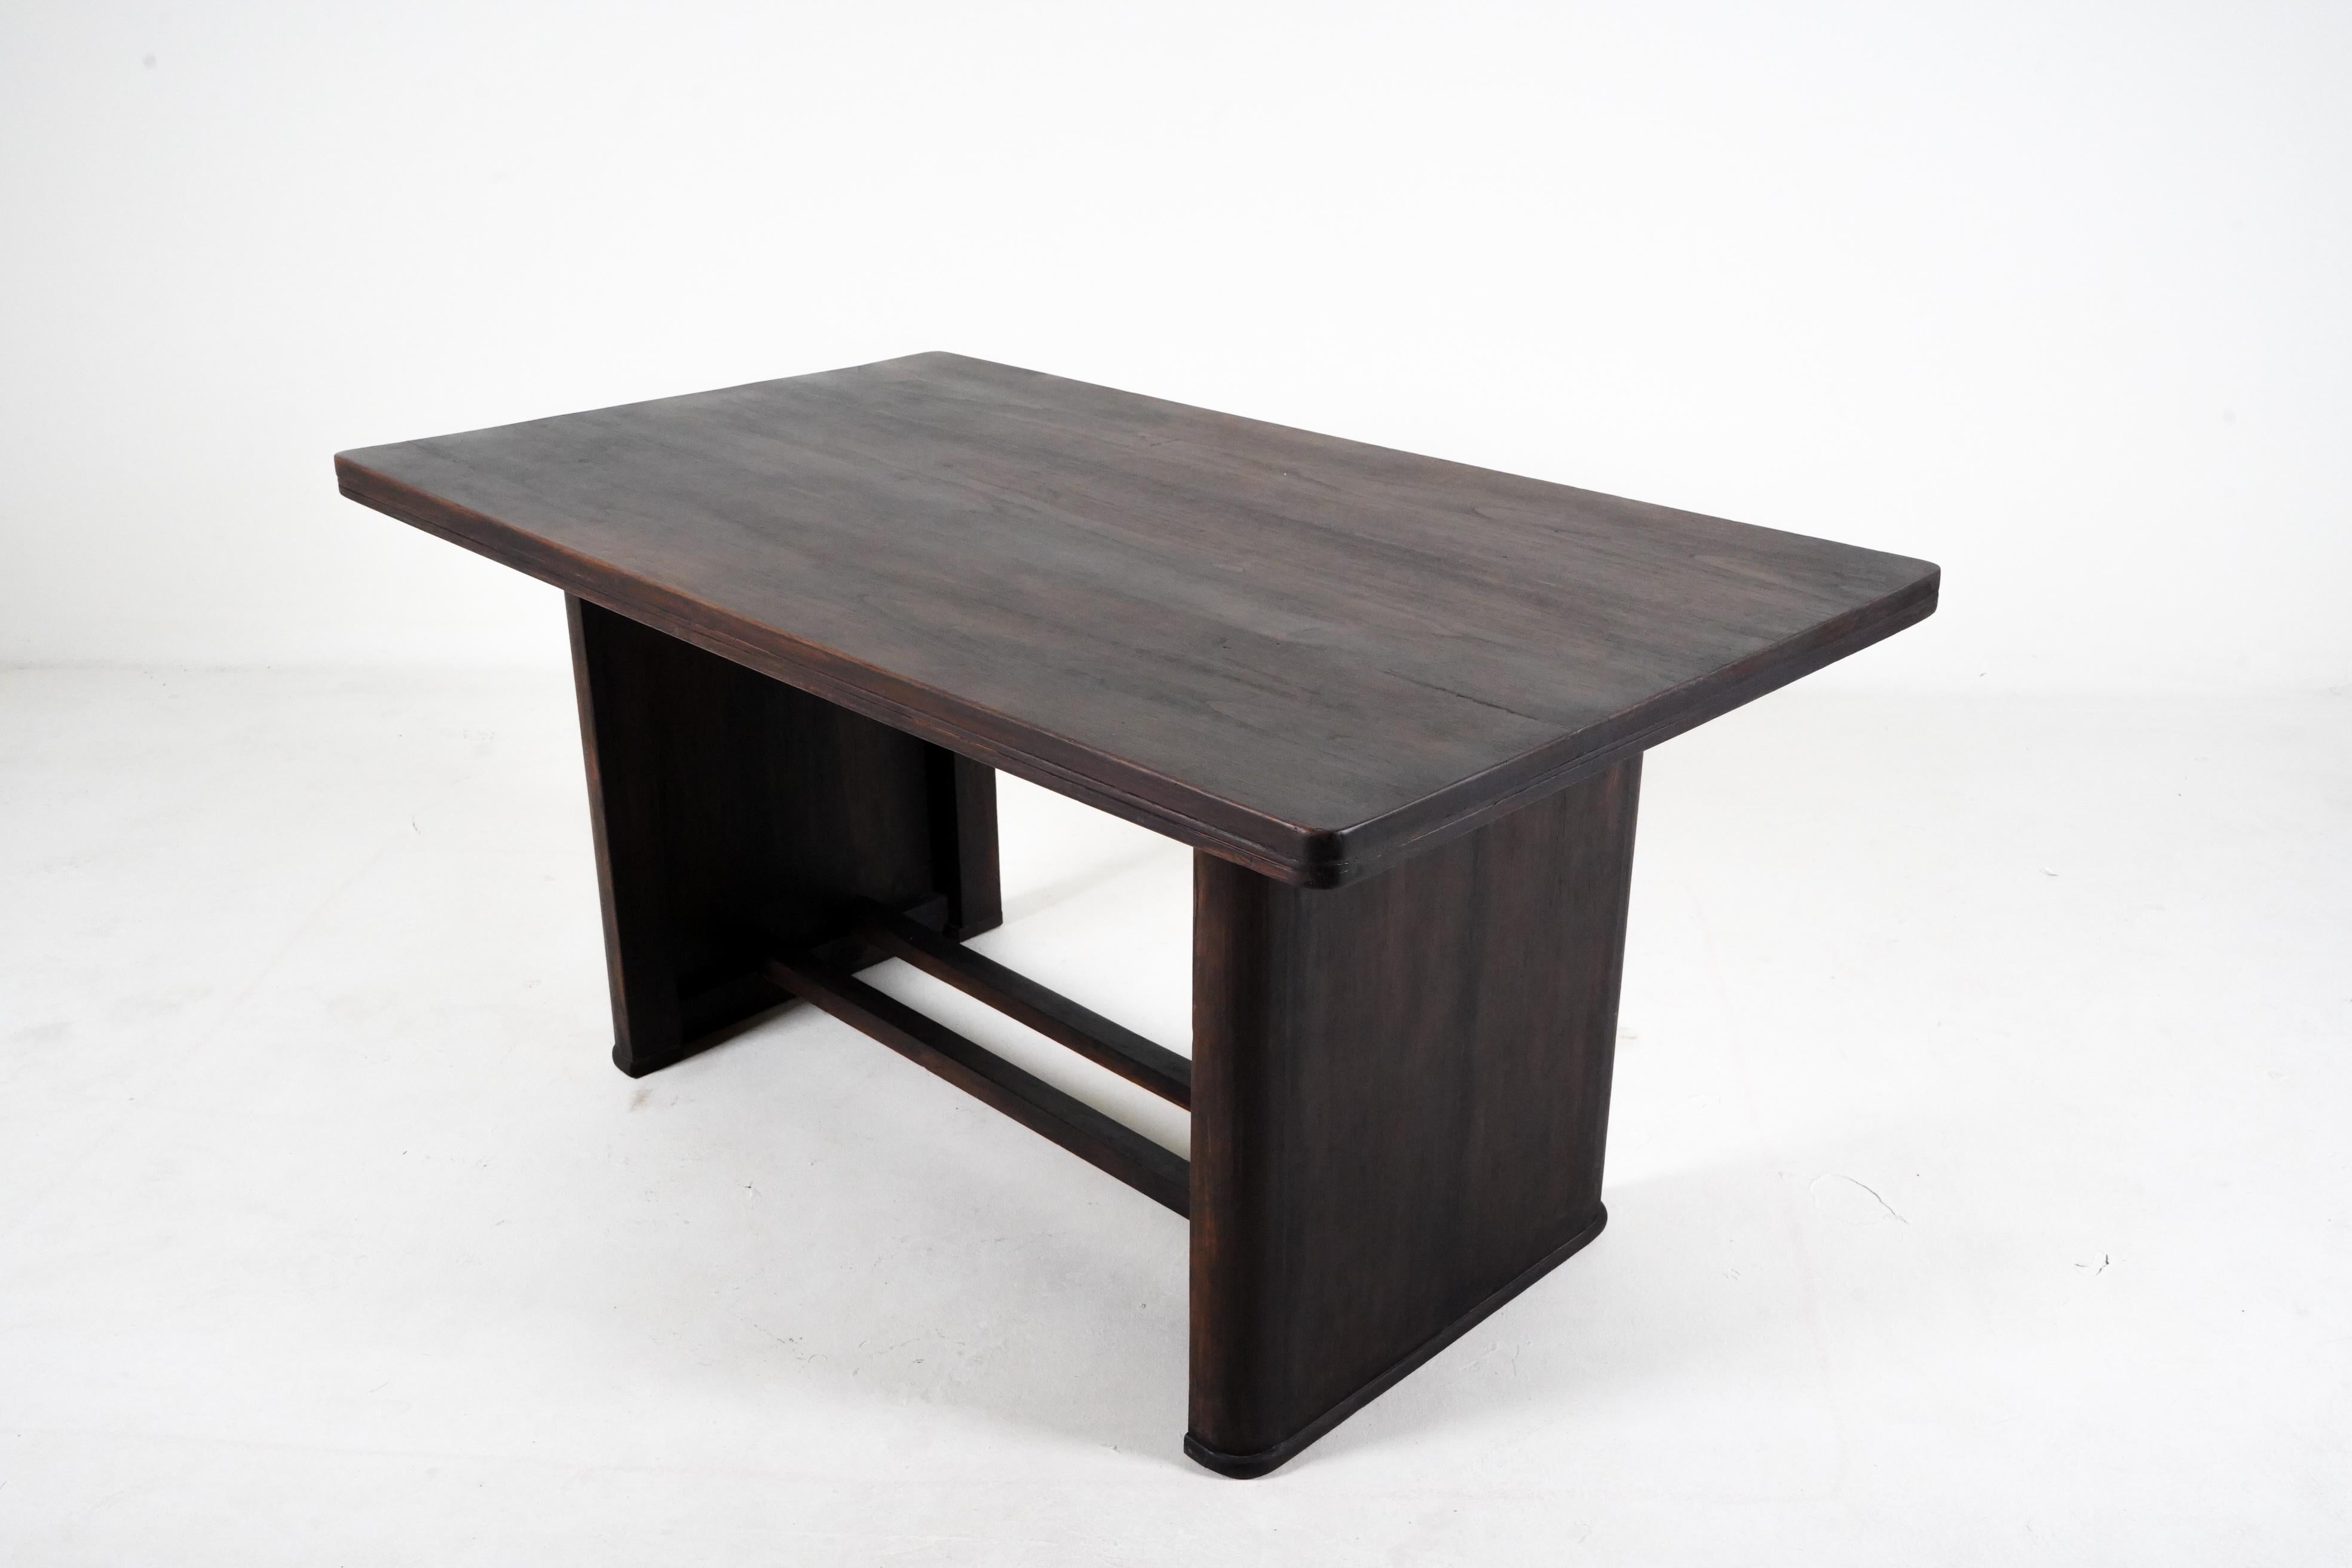 Cette table en bois de teck birman offre une durabilité et une beauté intemporelle avec son artisanat vintage et sa patine naturelle. La table est unique, fabriquée en bois de teck massif et durable pour des générations.